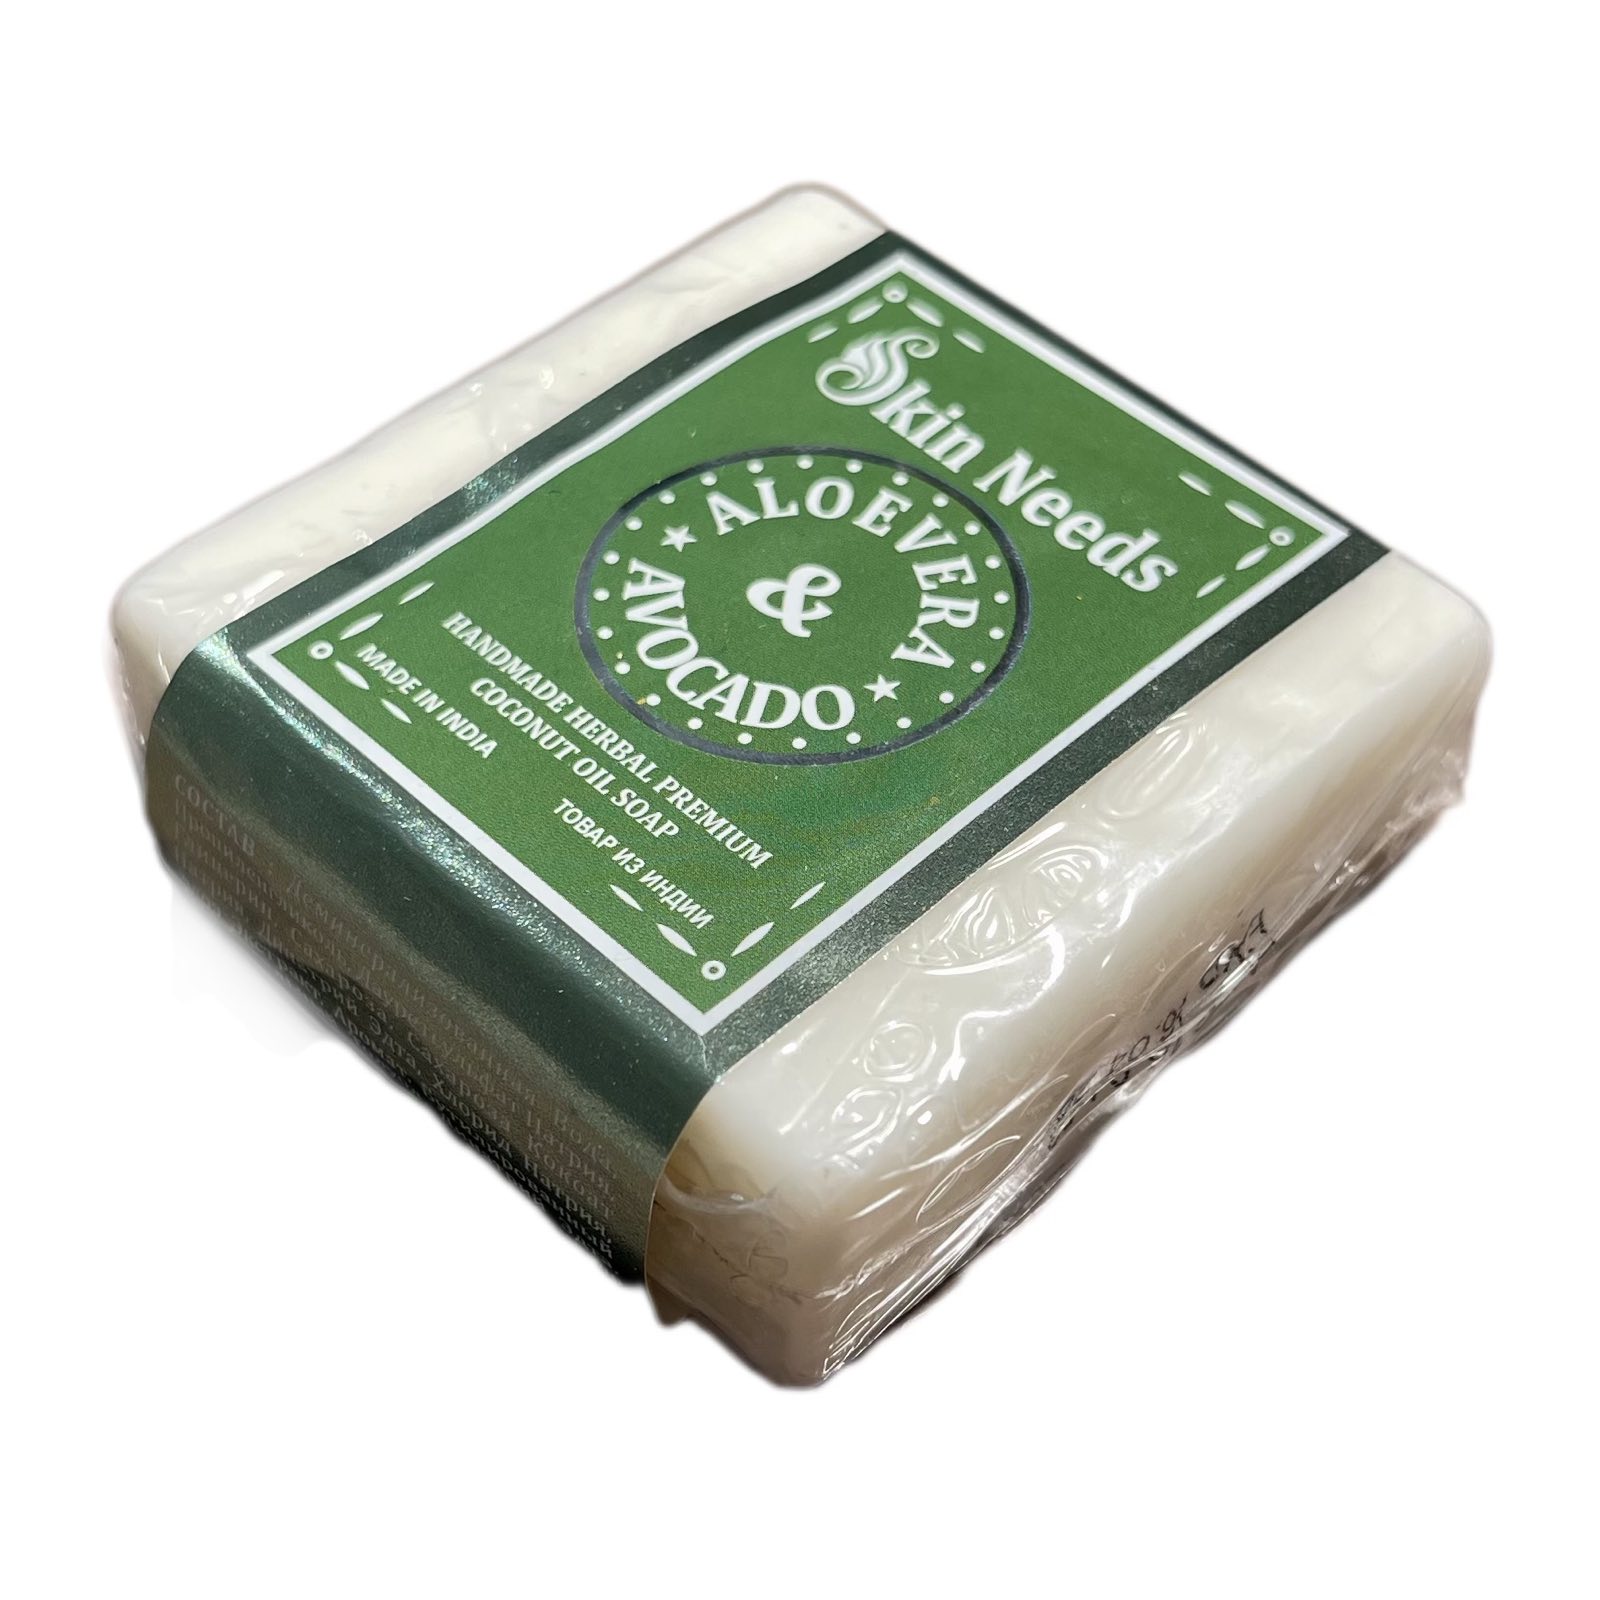 Skin Needs ALOE VERA & AVOCADO Handmade Herbal Premium Coconut Oil Soap (АЛОЭ (Алое) ВЕРА И АВОКАДО Травяное мыло премиум-класса, с кокосовым маслом, ручной работы), 100 г.